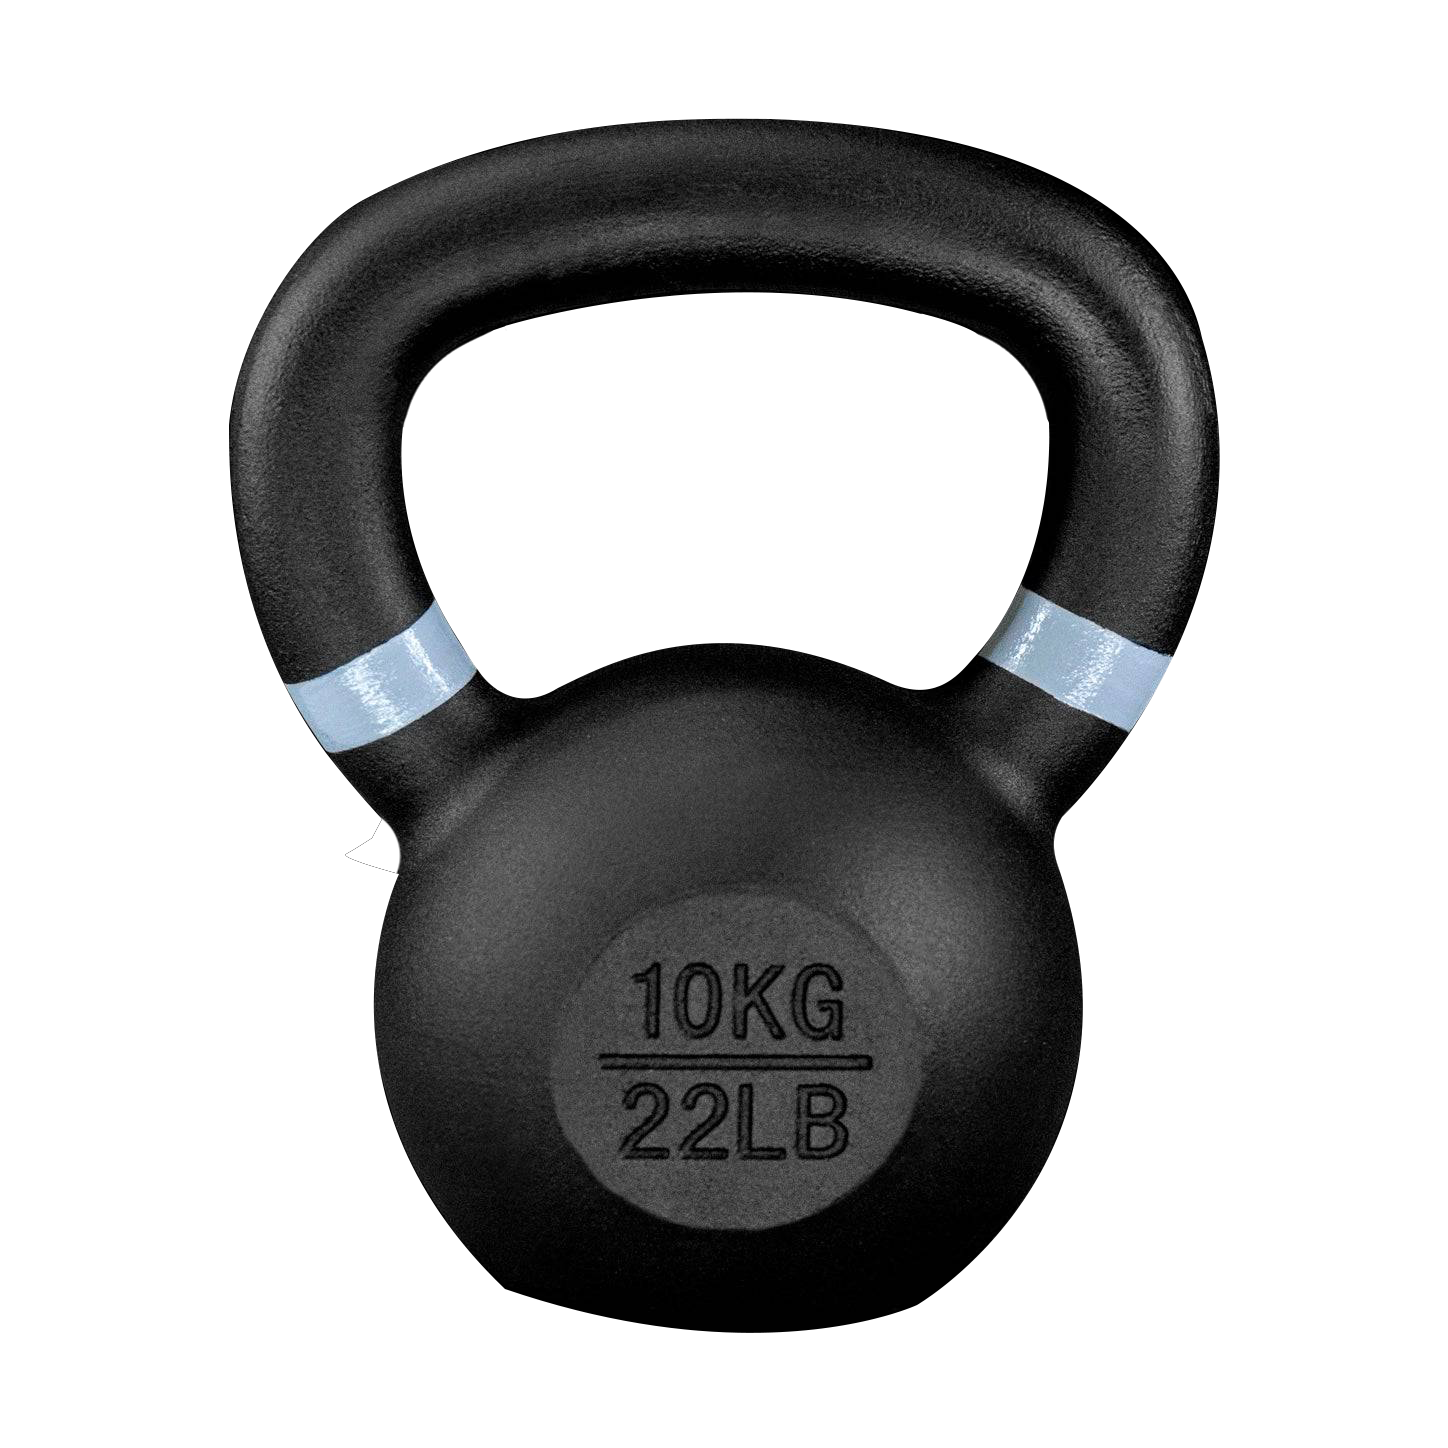 Black Kettlebell 10 kg / 22 lb – Doer Fitness